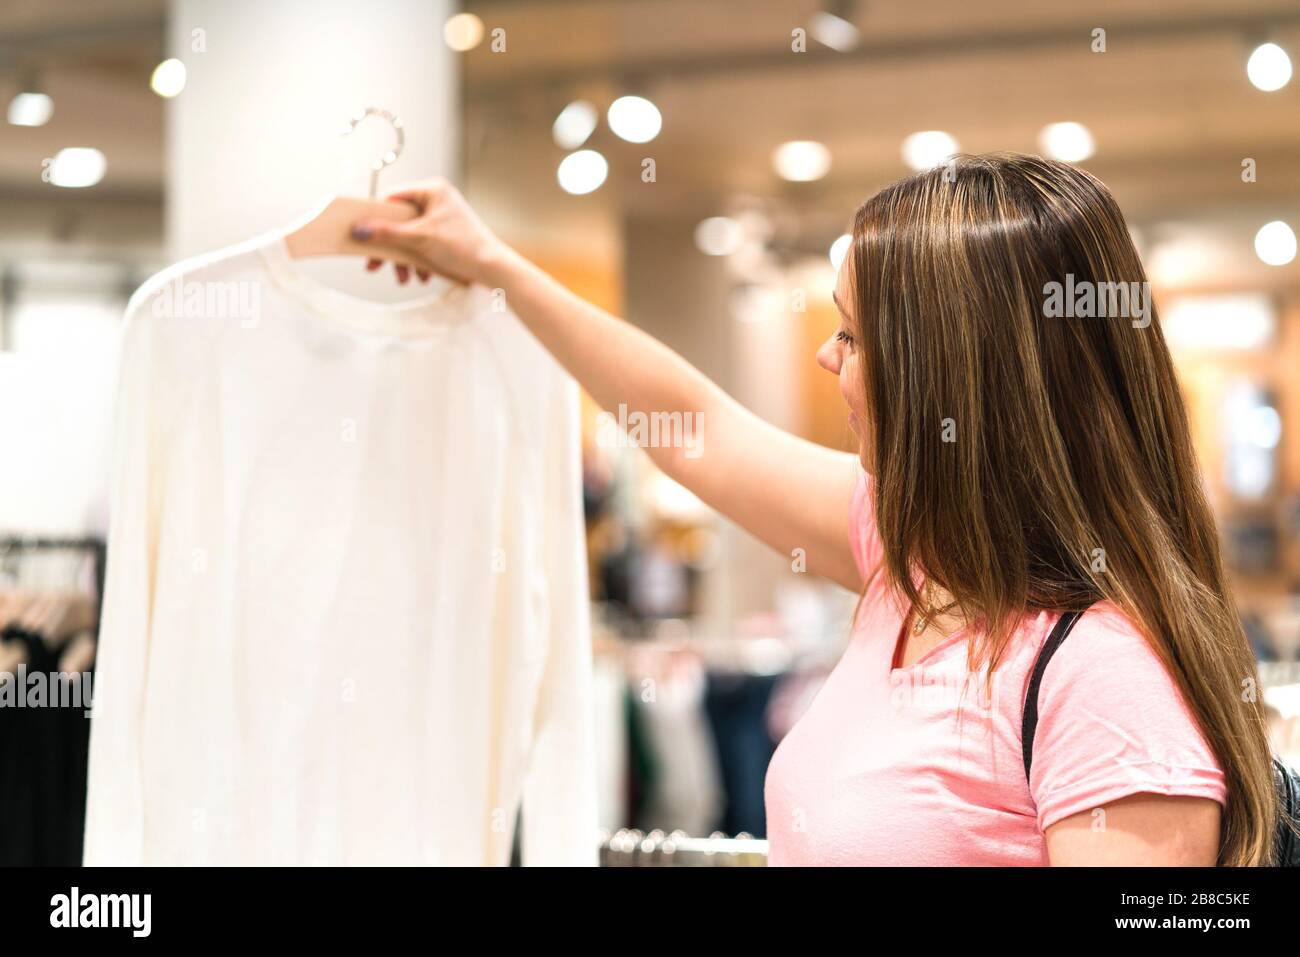 Frau hält Bluse im Kleiderbügel im Modegeschäft. Einkaufen nach Pullover oder Hemd. Zufriedene Kunden und Käufer auf der Suche nach neuer Kleidung. Stockfoto